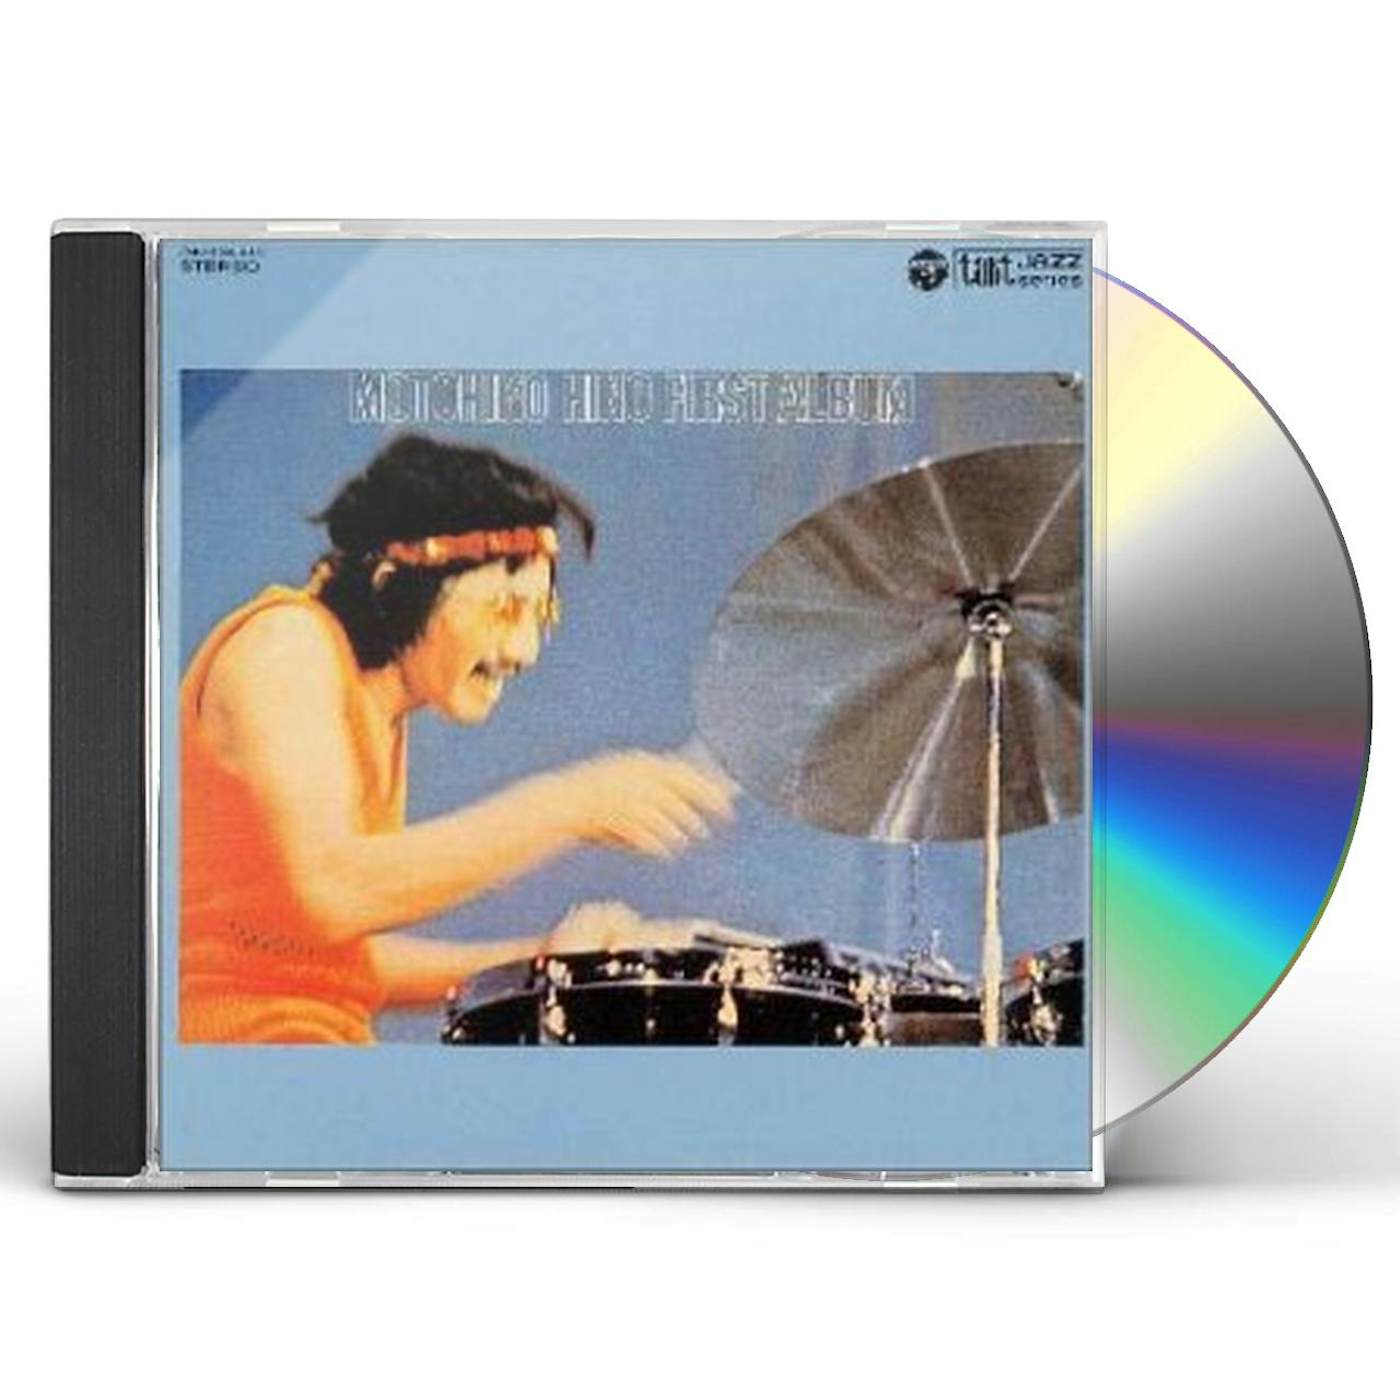 Motohiko Hino FIRST ALBUM CD